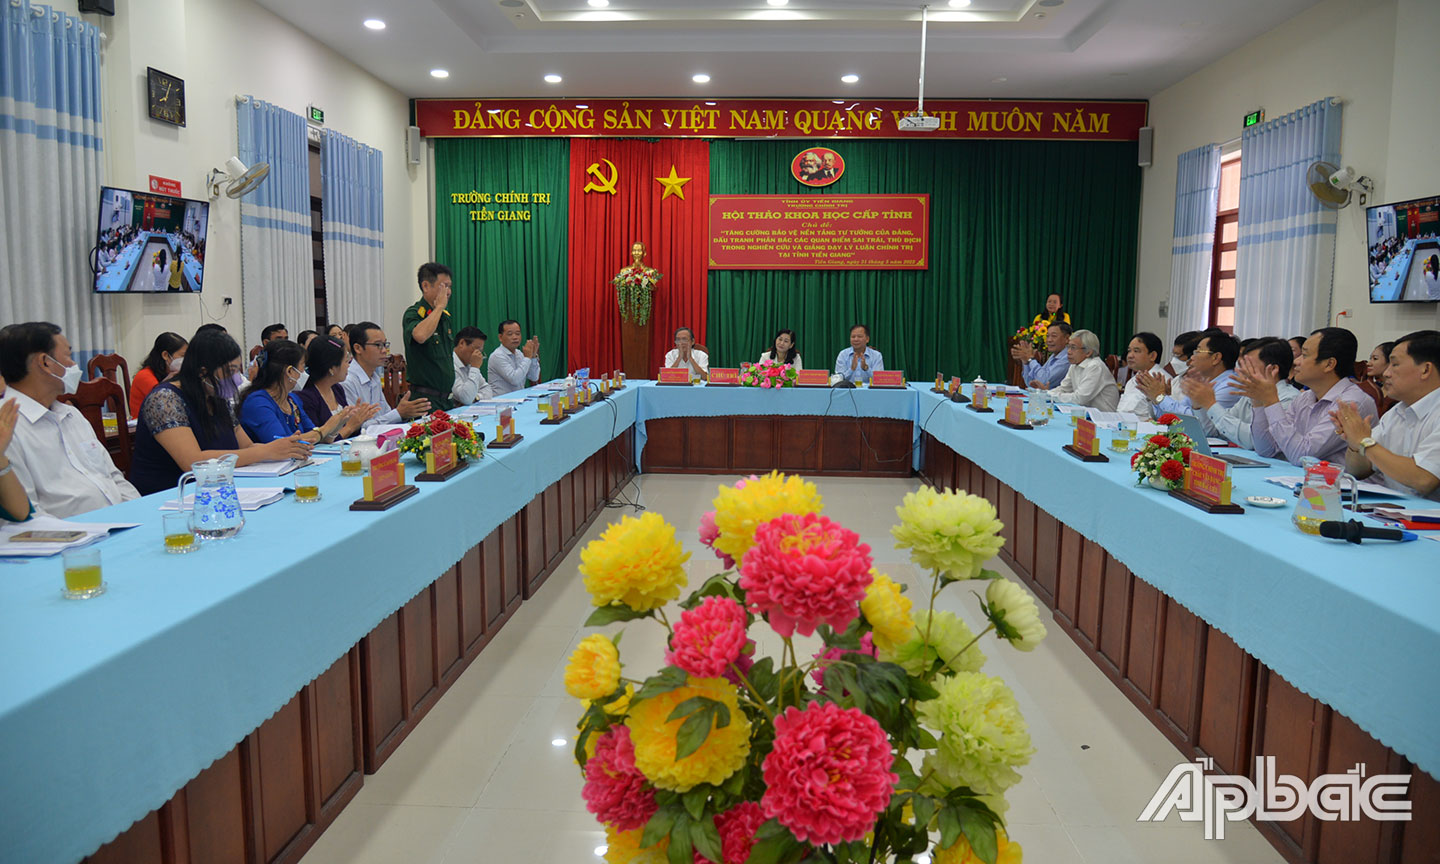 Quang cảnh Hội thảo tại Trường Chính trị Tiền Giang.